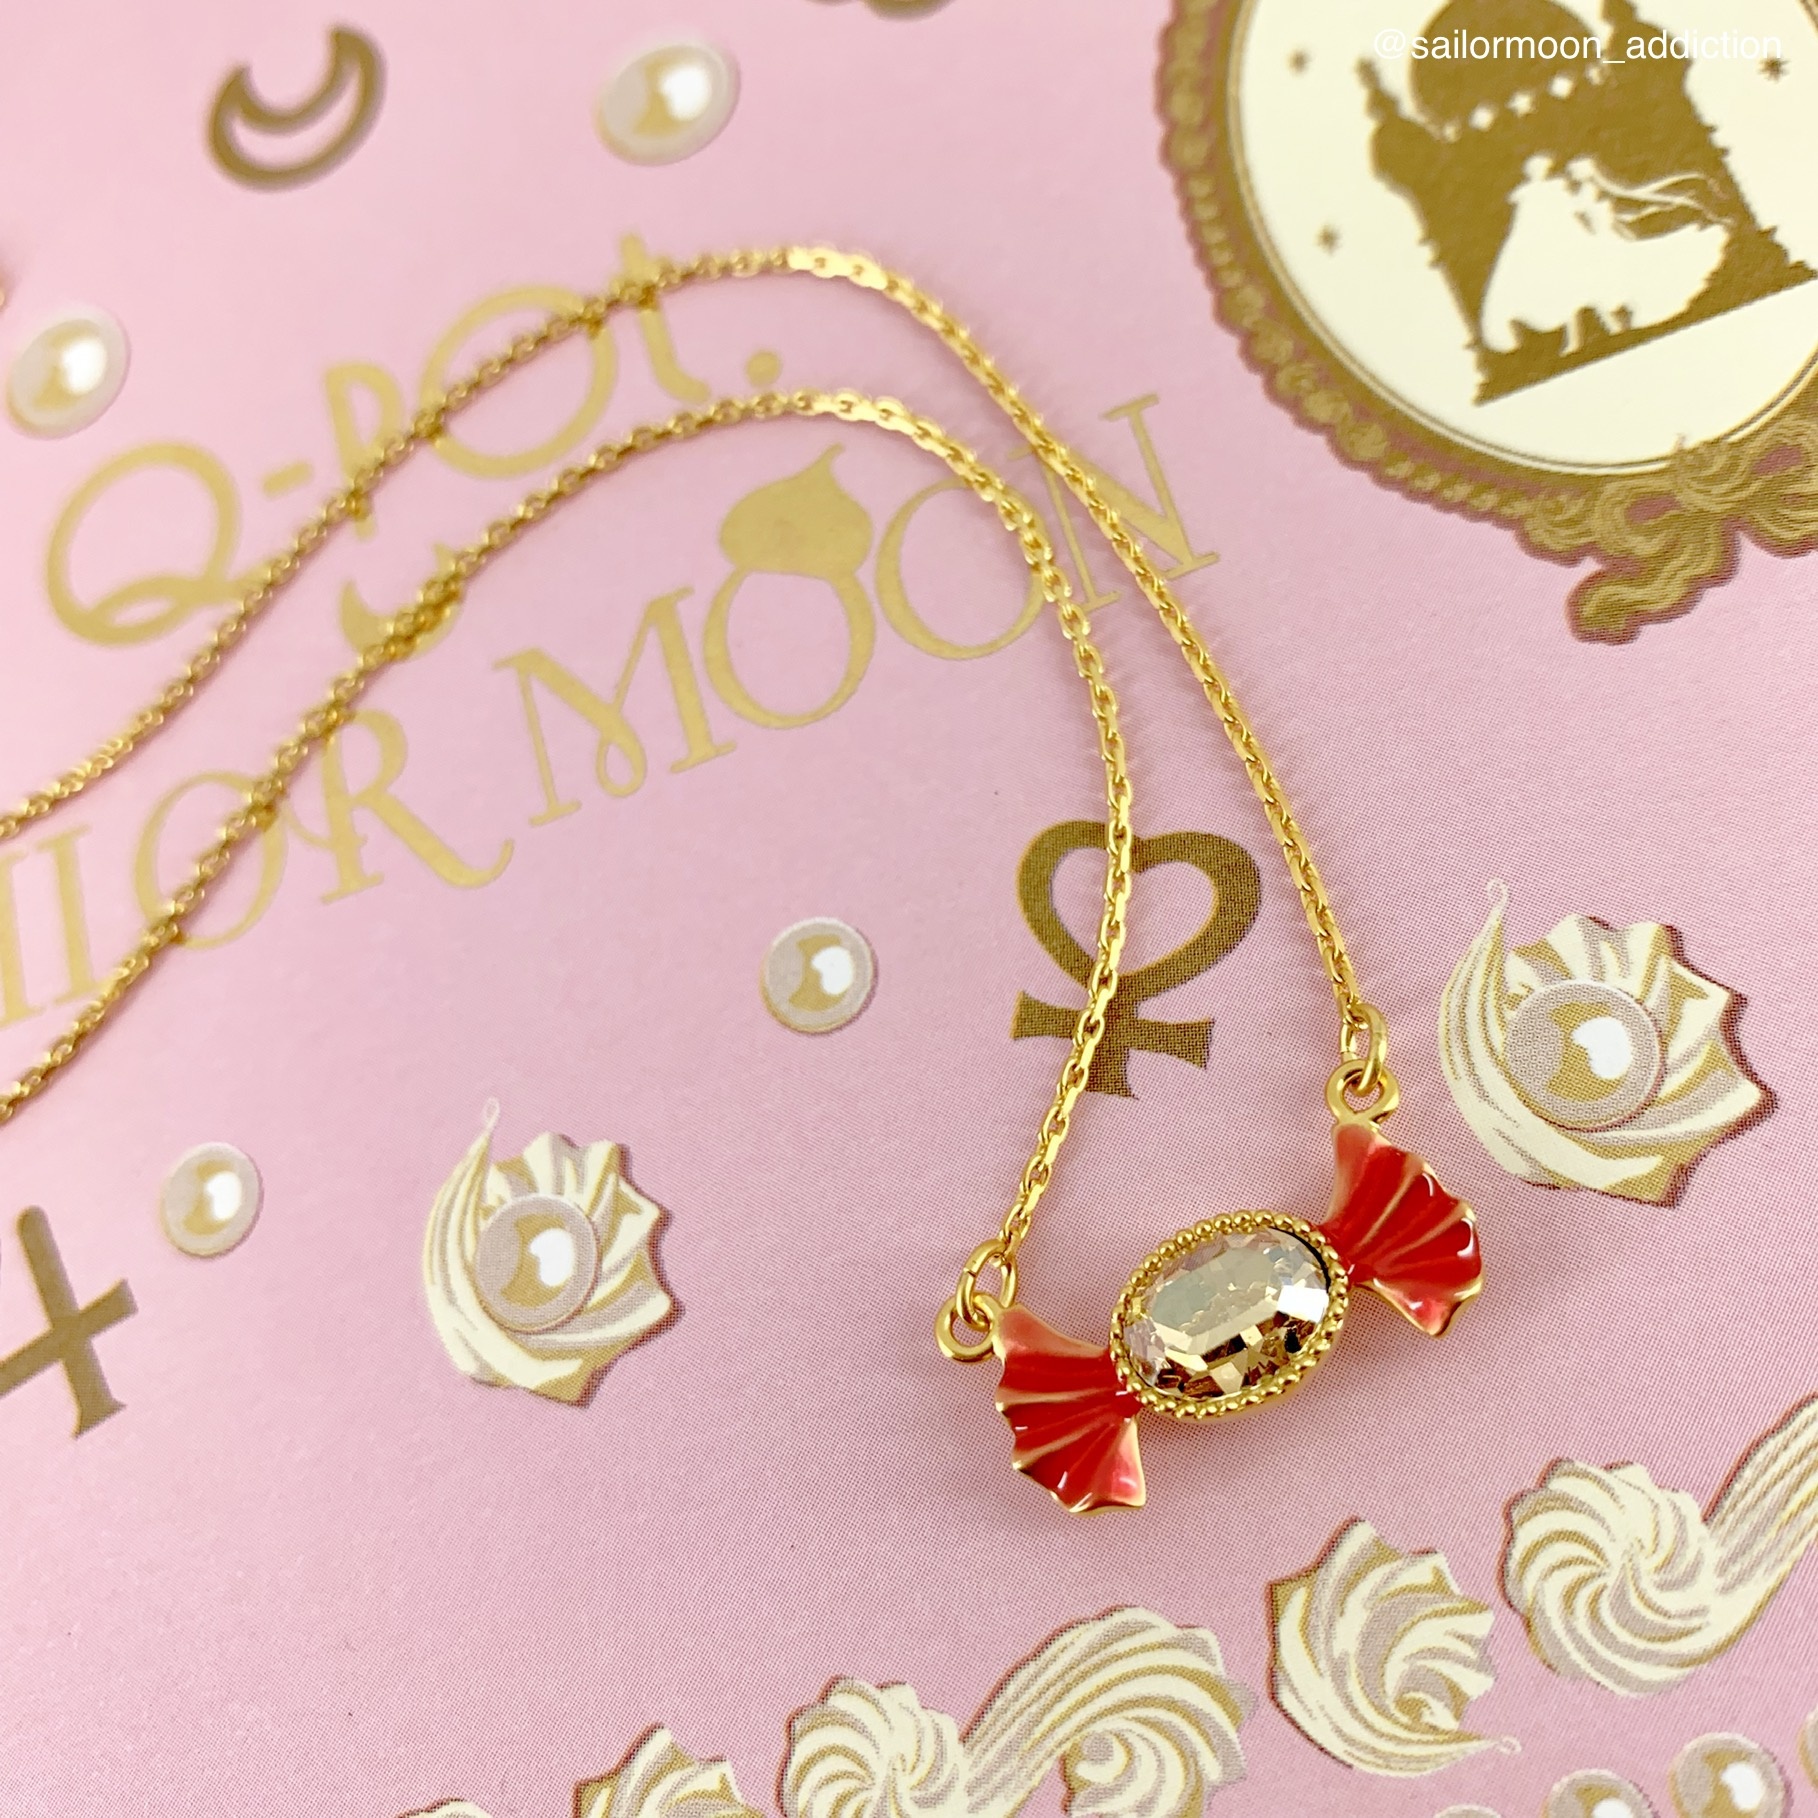 Sailor Moon Fan Club Exclusive Q-Pot Macaron Necklace & Bag Charm Review